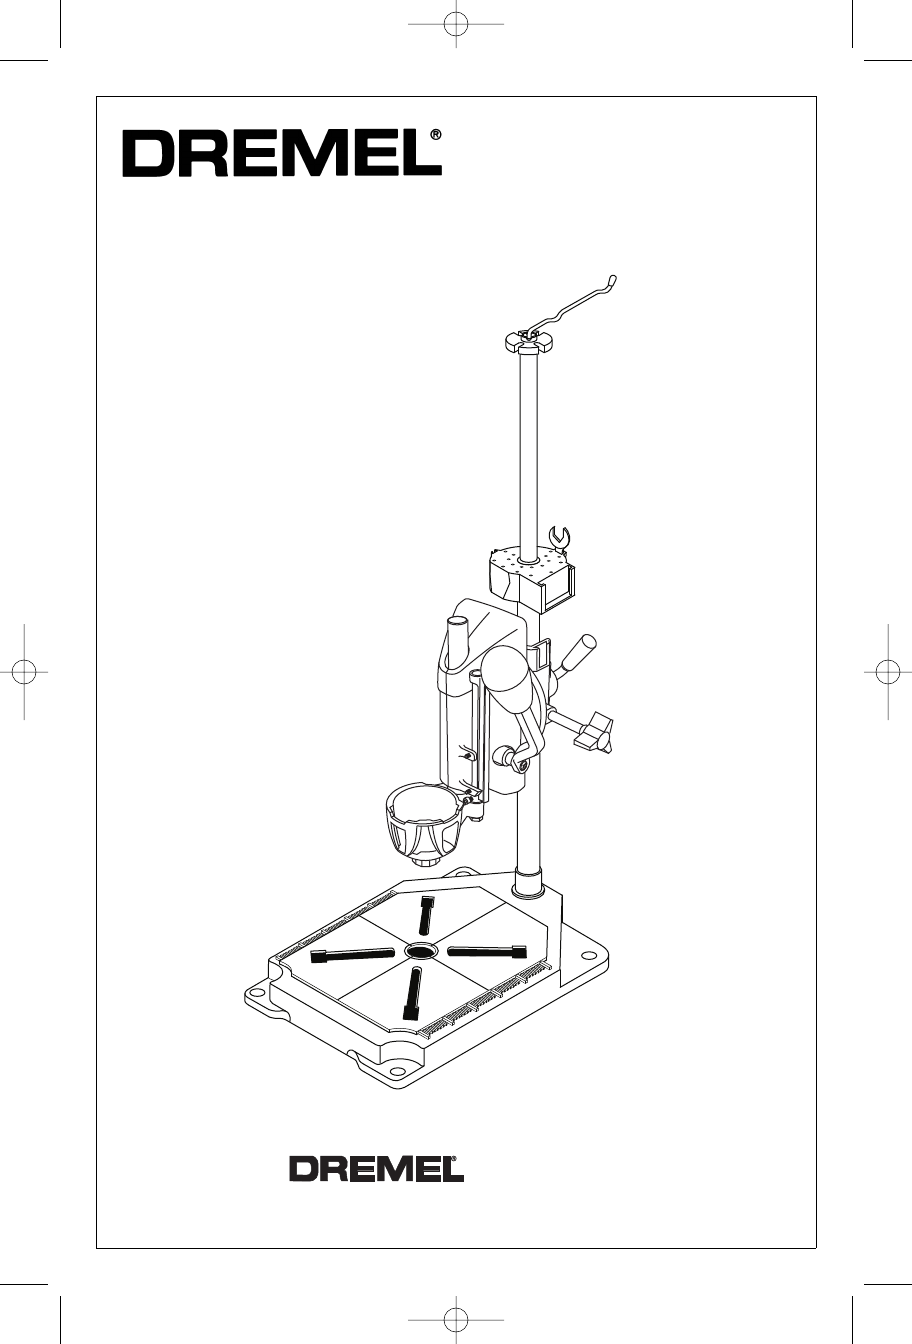 Dremel Drill Press Model 210 Instructions, PDF, Metalworking